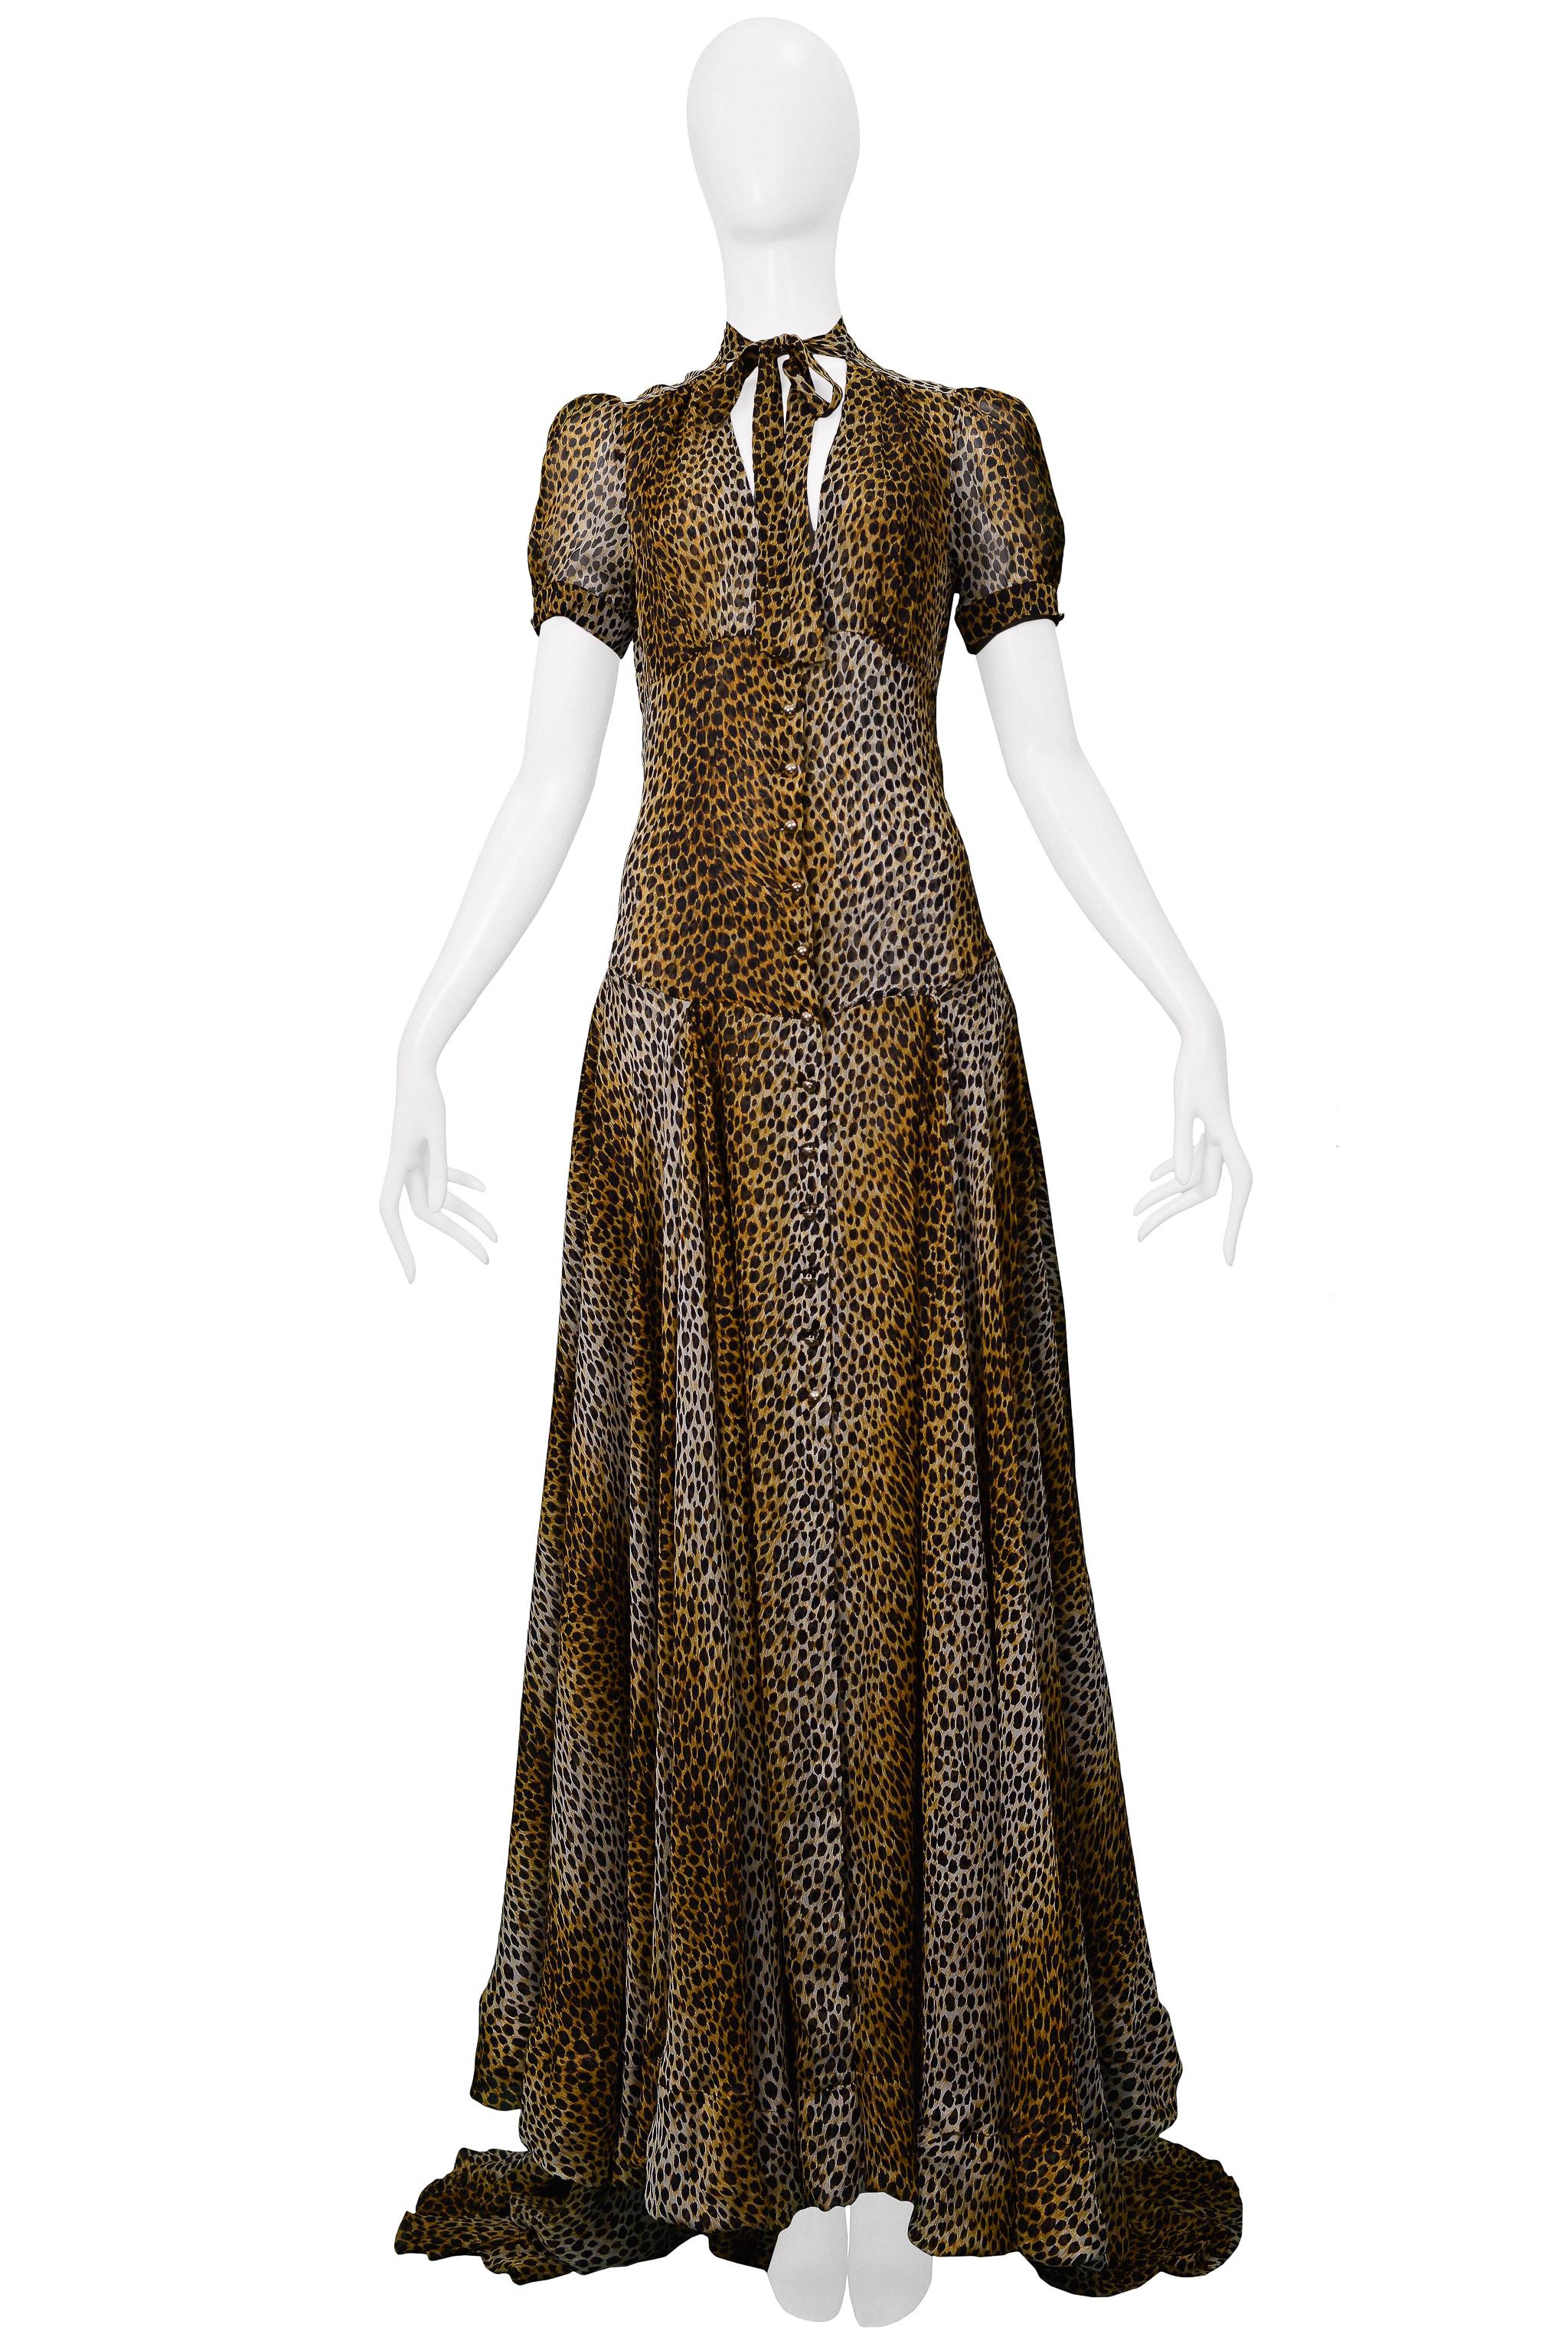 Resurrection freut sich, ein Vintage-Dolce & Gabbana D&G Abendkleid mit Leopardenmuster anbieten zu können. Es hat ein Schlüsselloch vorne, eine Krawatte, goldene Knöpfe, kurze Ärmel, halbdurchsichtigen Stoff, einen bodenlangen Rock mit einer